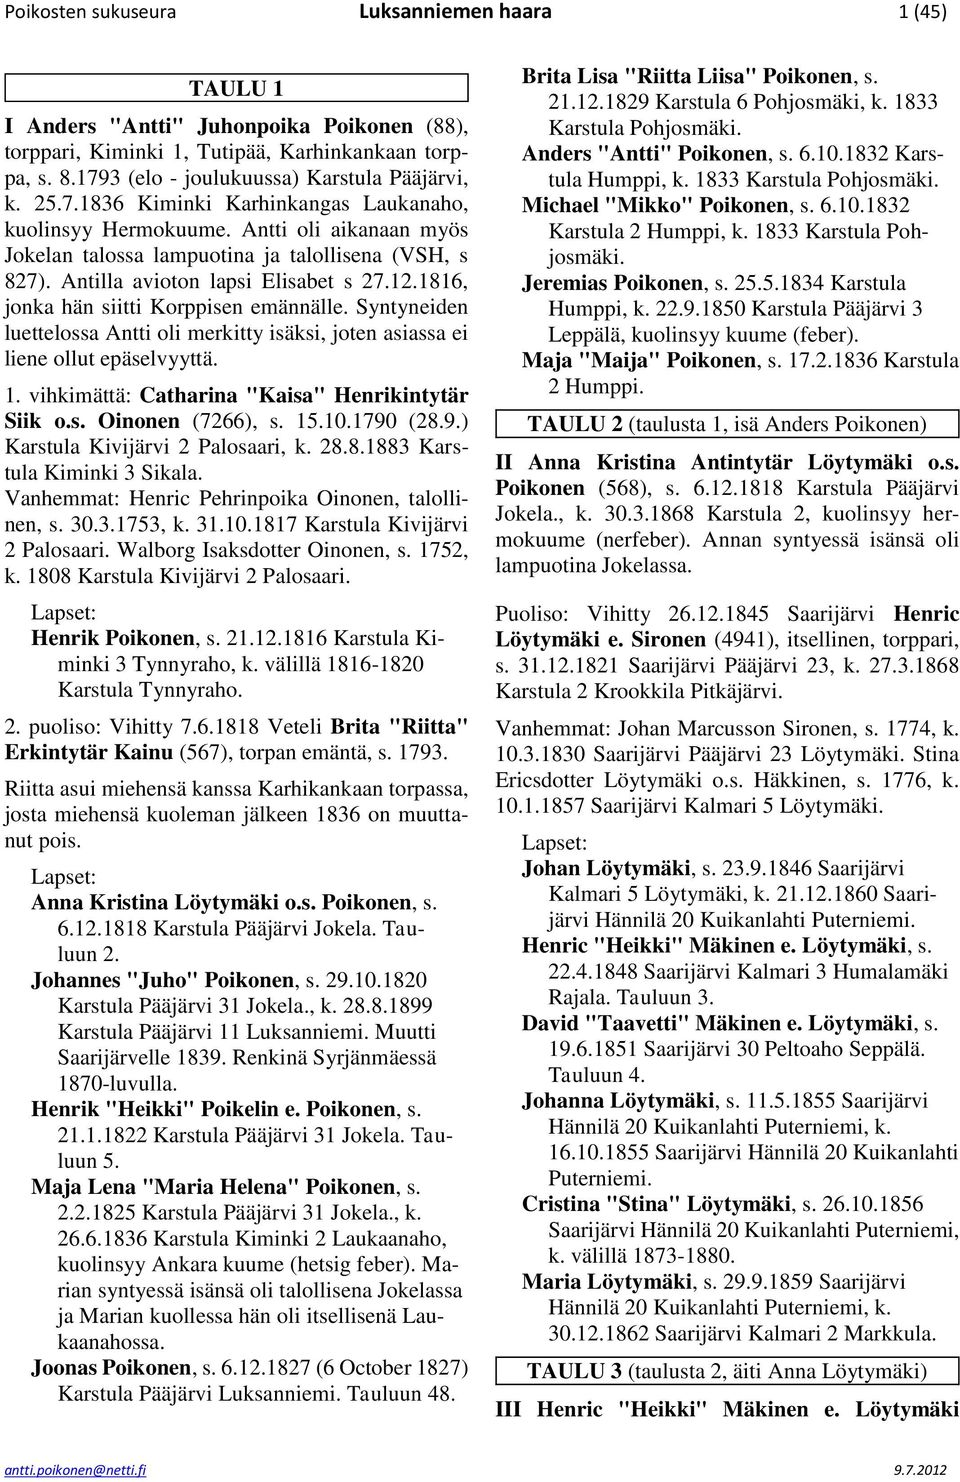 1816, jonka hän siitti Korppisen emännälle. Syntyneiden luettelossa Antti oli merkitty isäksi, joten asiassa ei liene ollut epäselvyyttä. 1. vihkimättä: Catharina "Kaisa" Henrikintytär Siik o.s. Oinonen (7266), s.